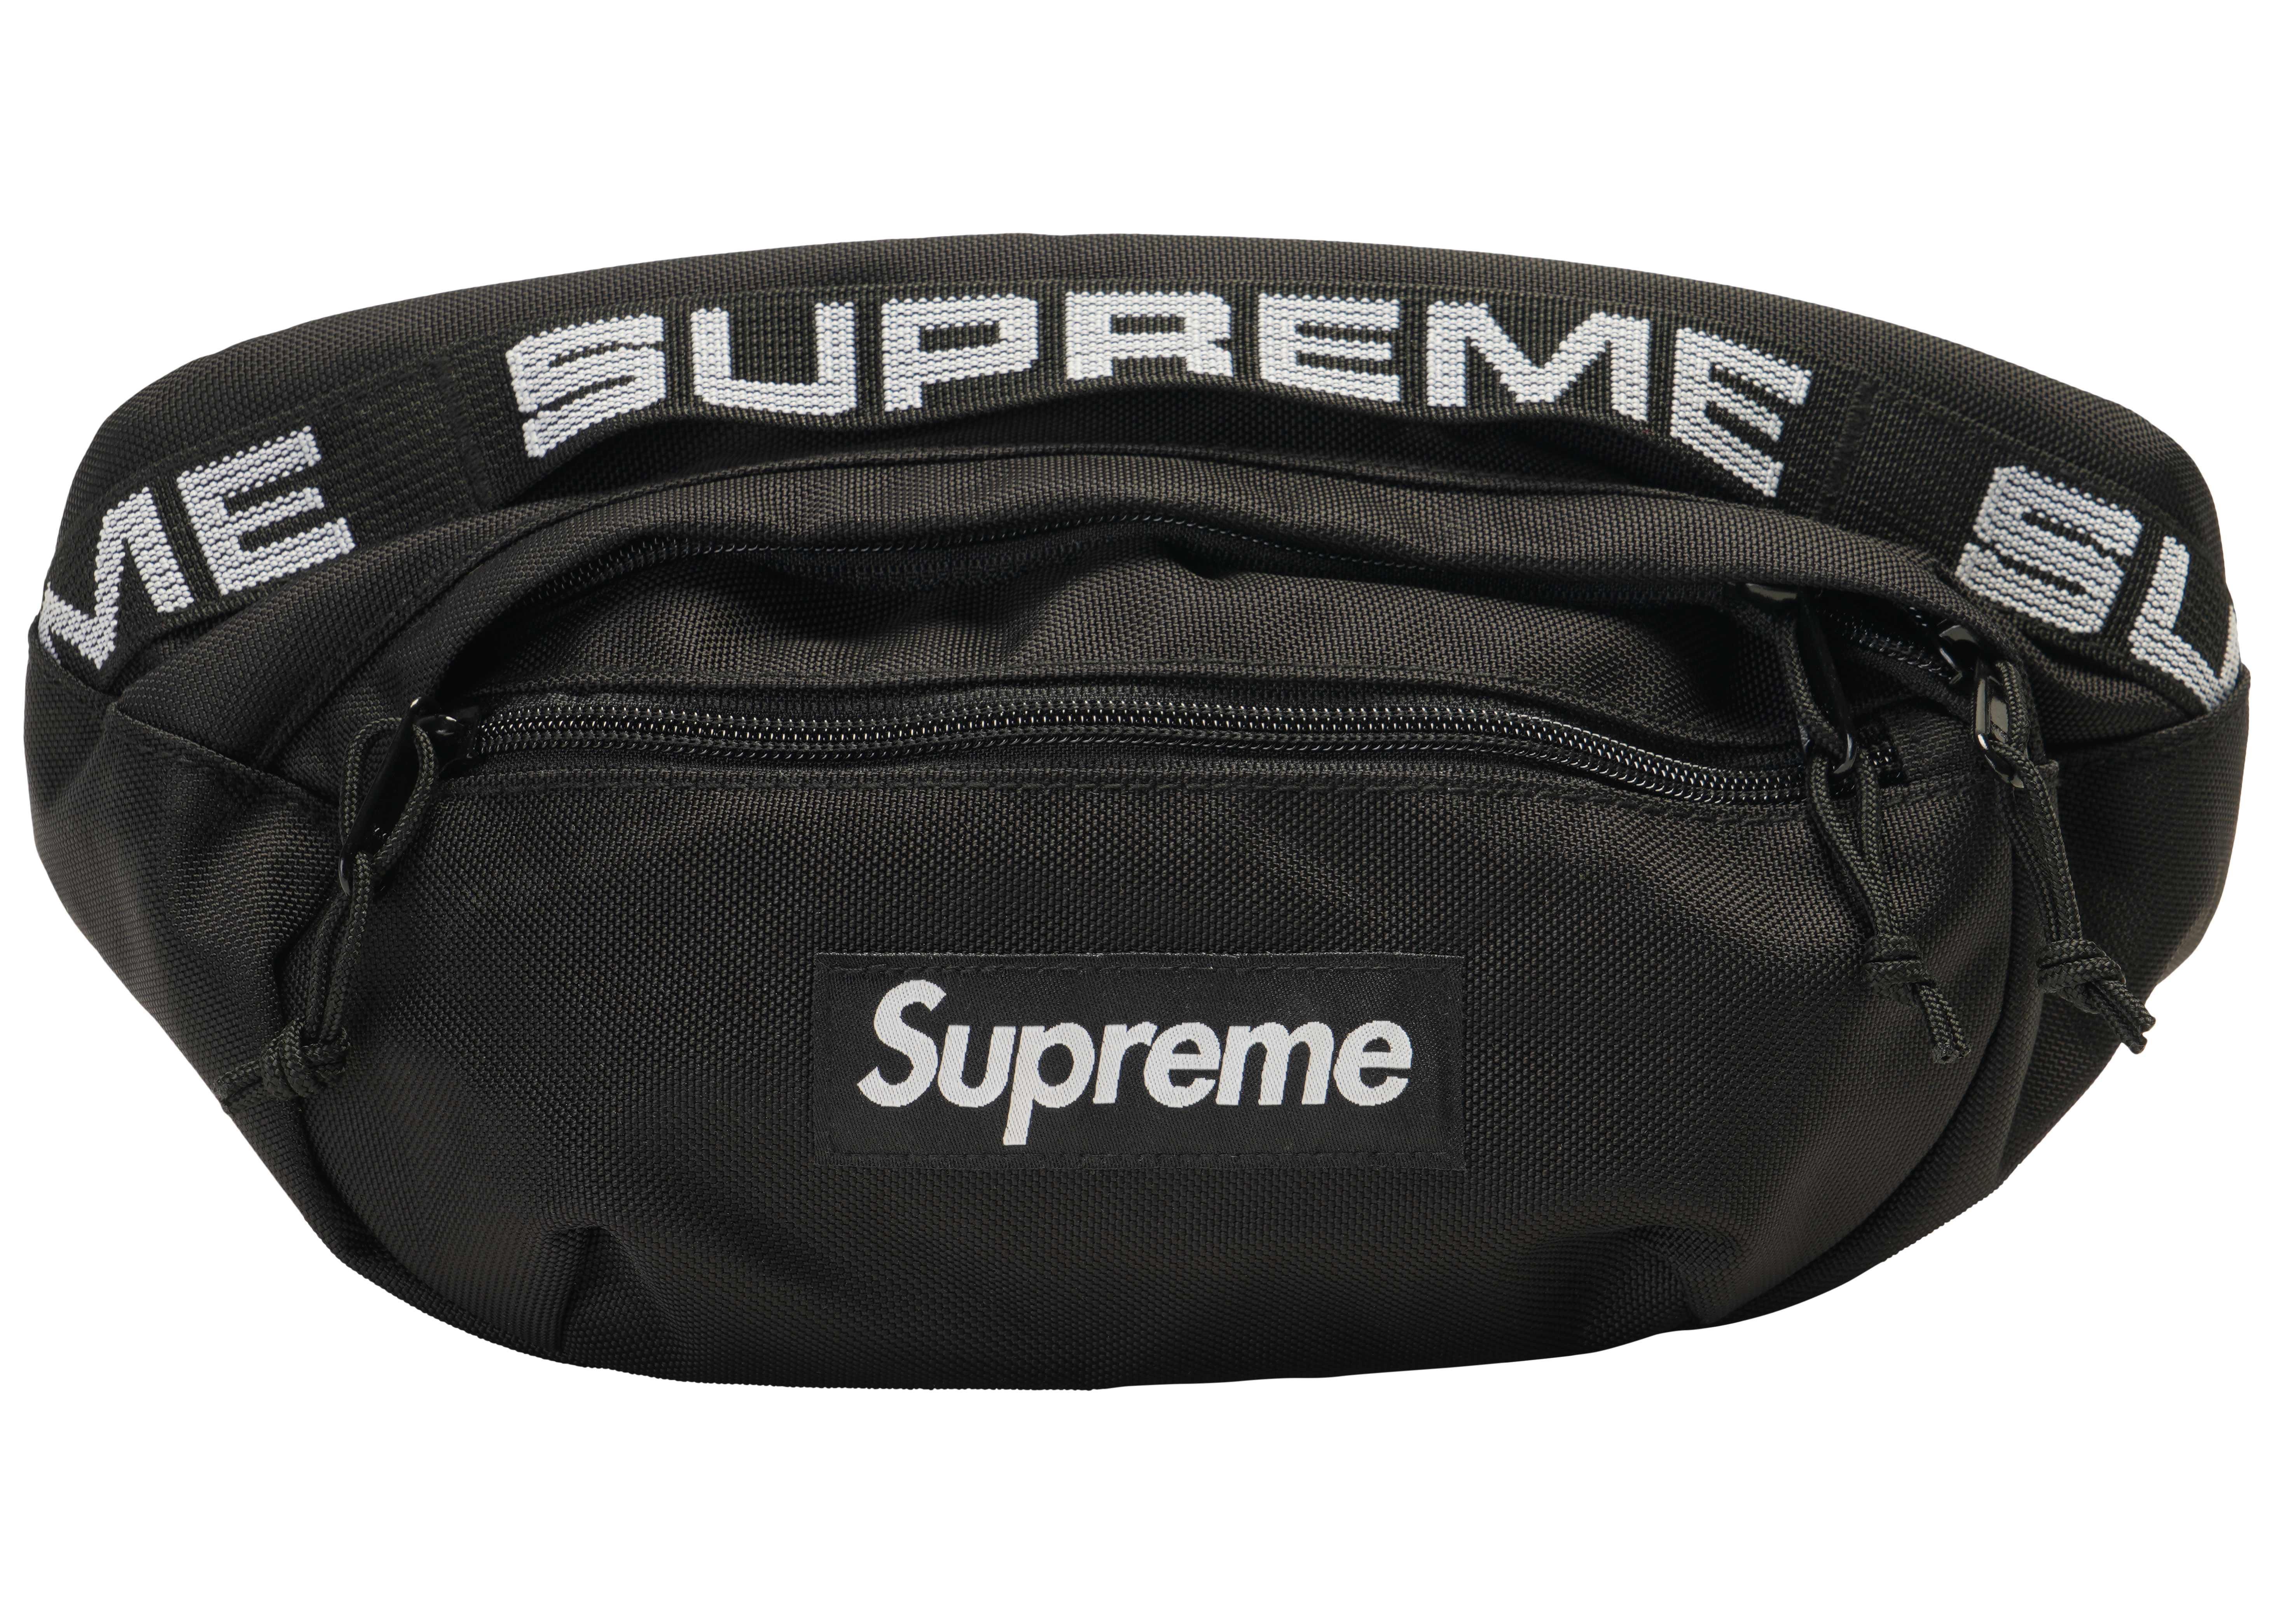 supreme bag waist bag